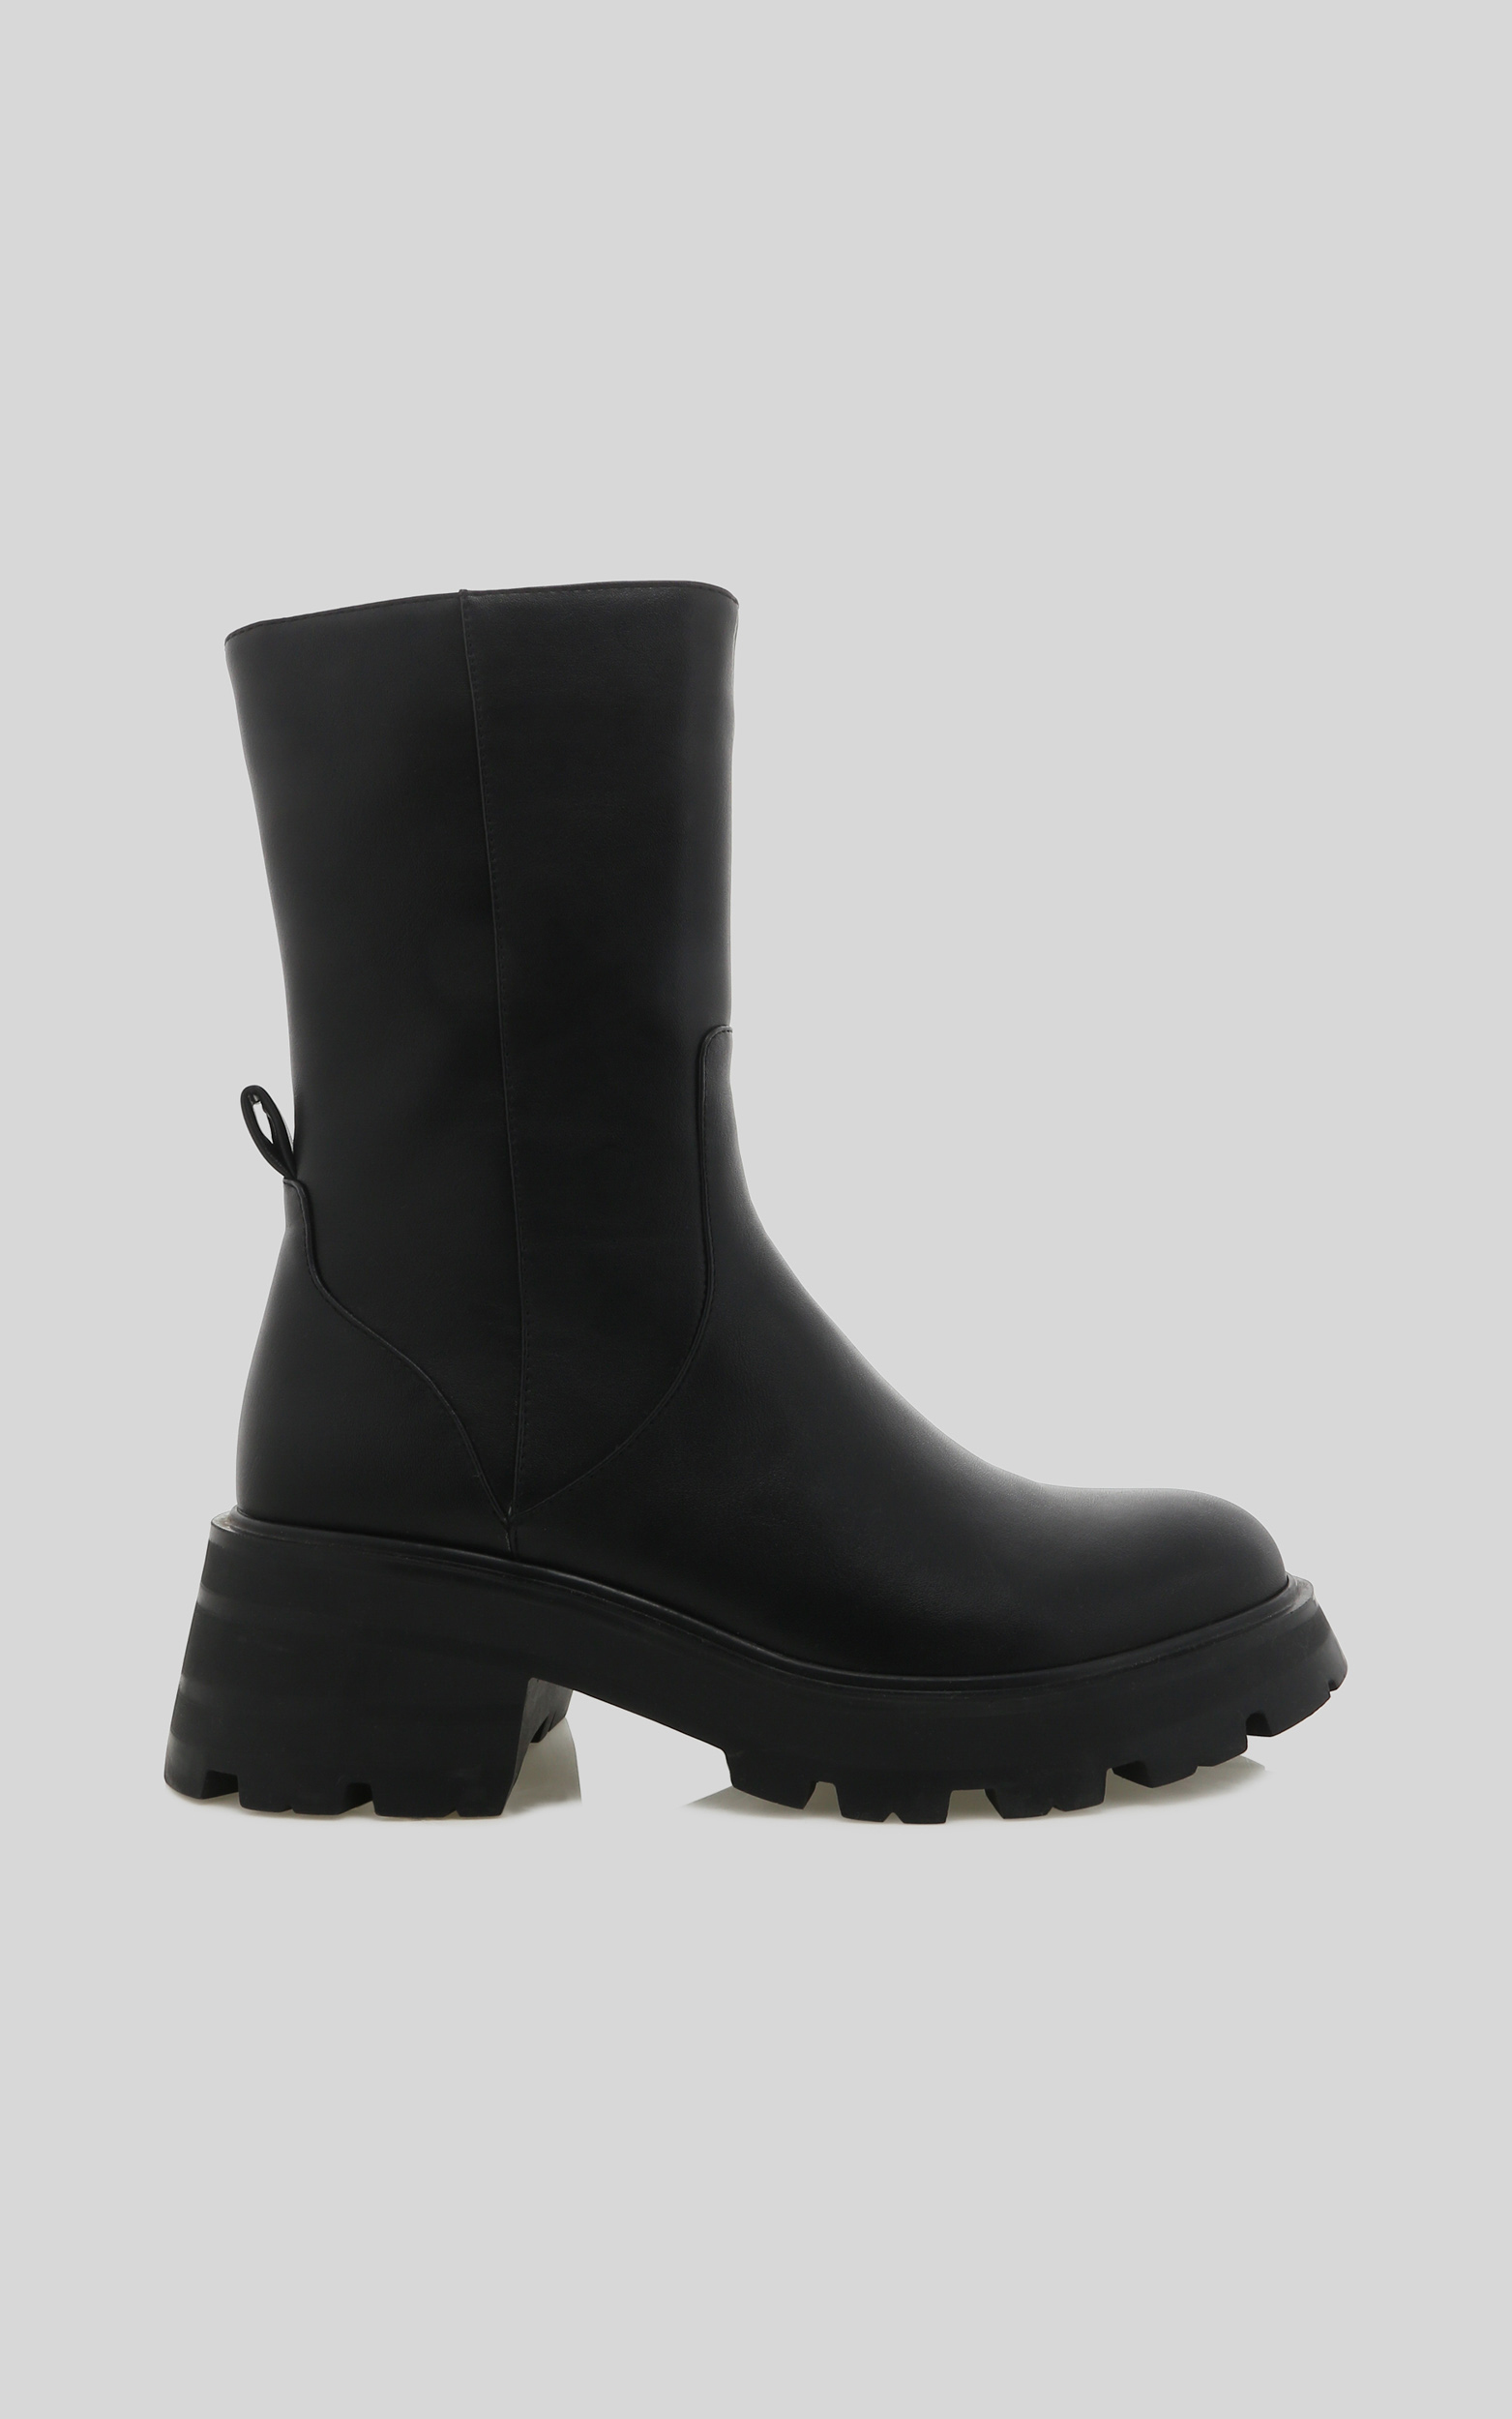 Billini - Emmett Boots in Black - 06, BLK1, hi-res image number null